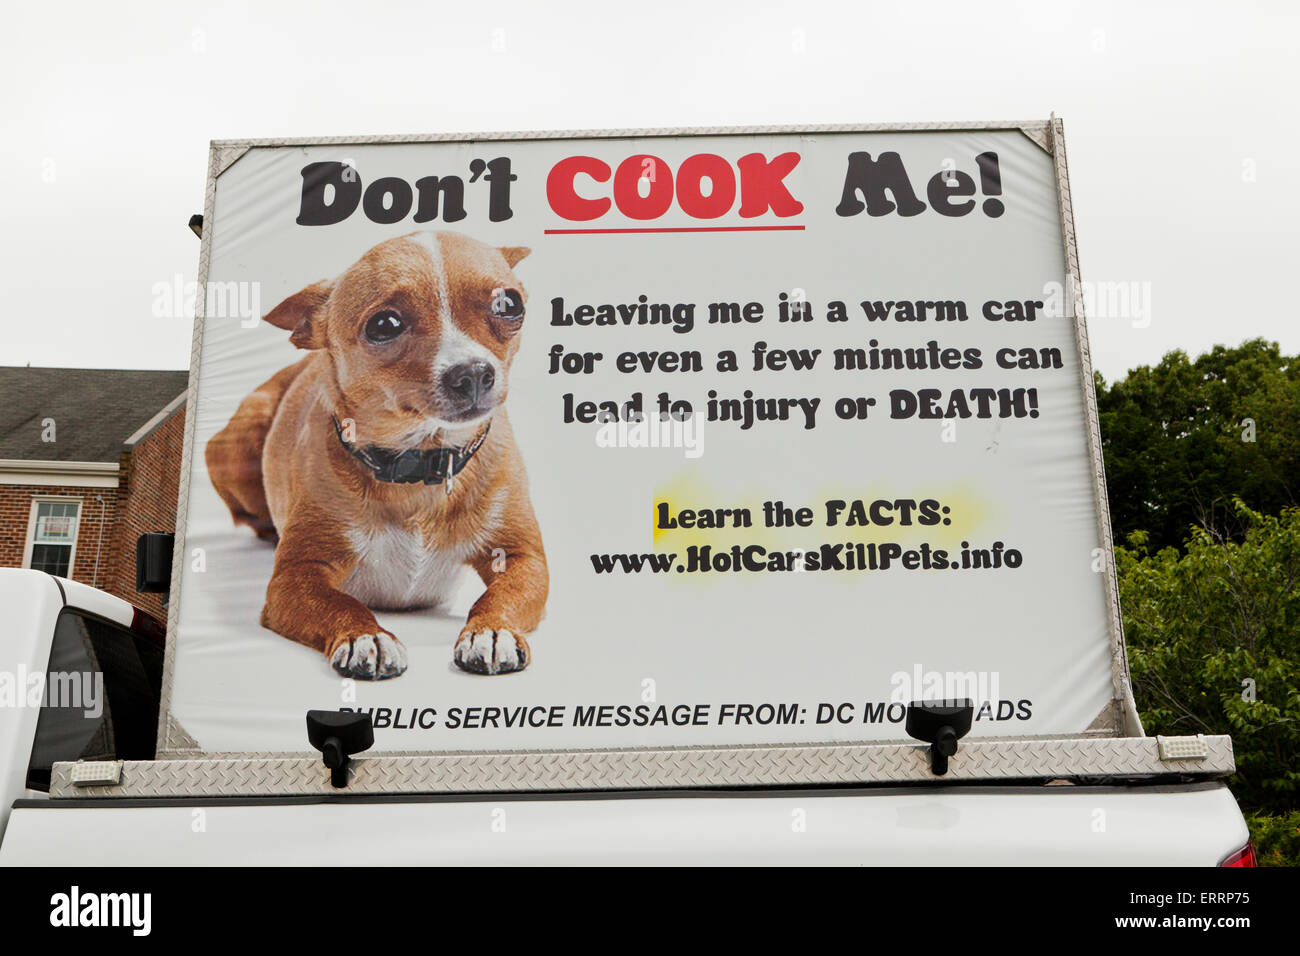 donante Puñado Toro Tablón de anuncios de servicio público sobre los peligros de dejar mascotas  en hot cars - EE.UU Fotografía de stock - Alamy